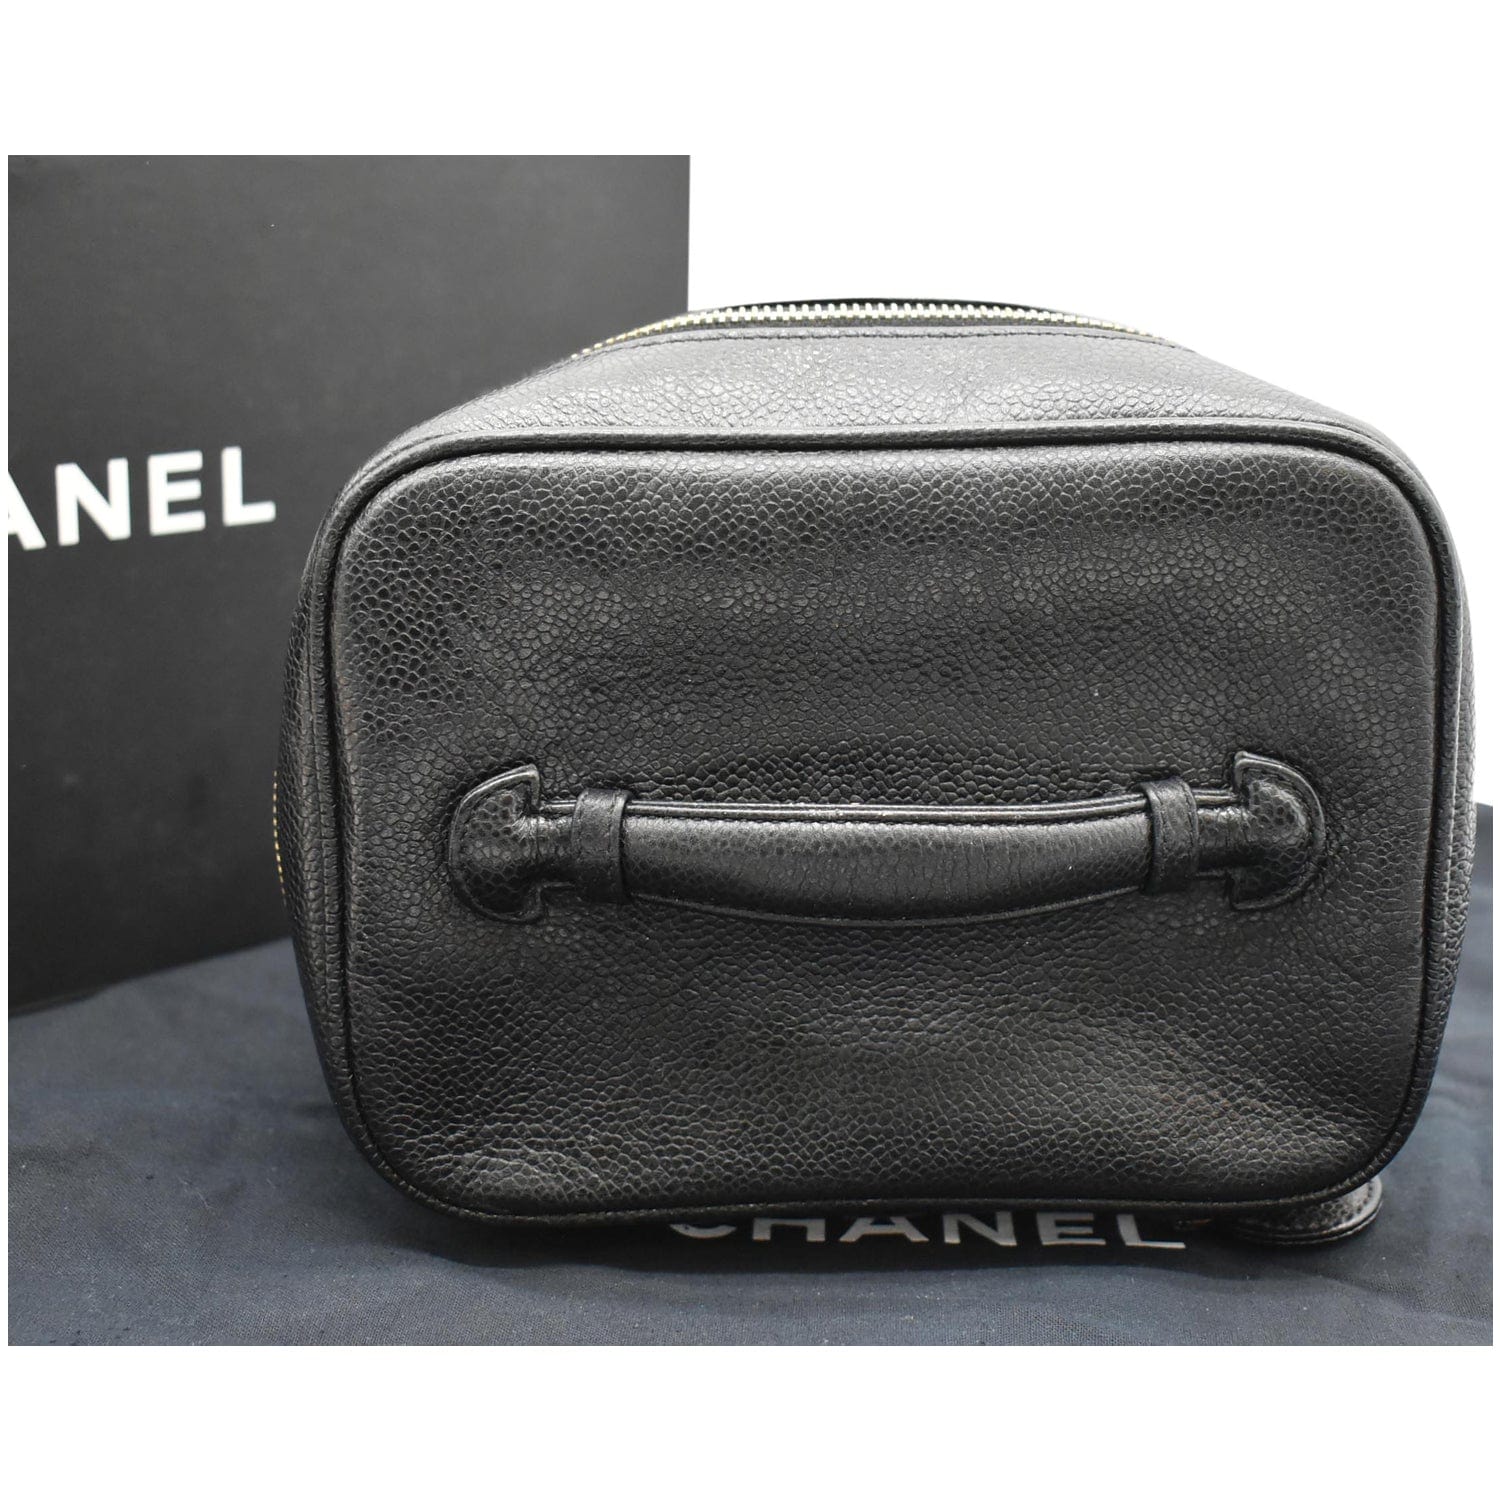 Vintage Chanel Vanity - 43 For Sale on 1stDibs